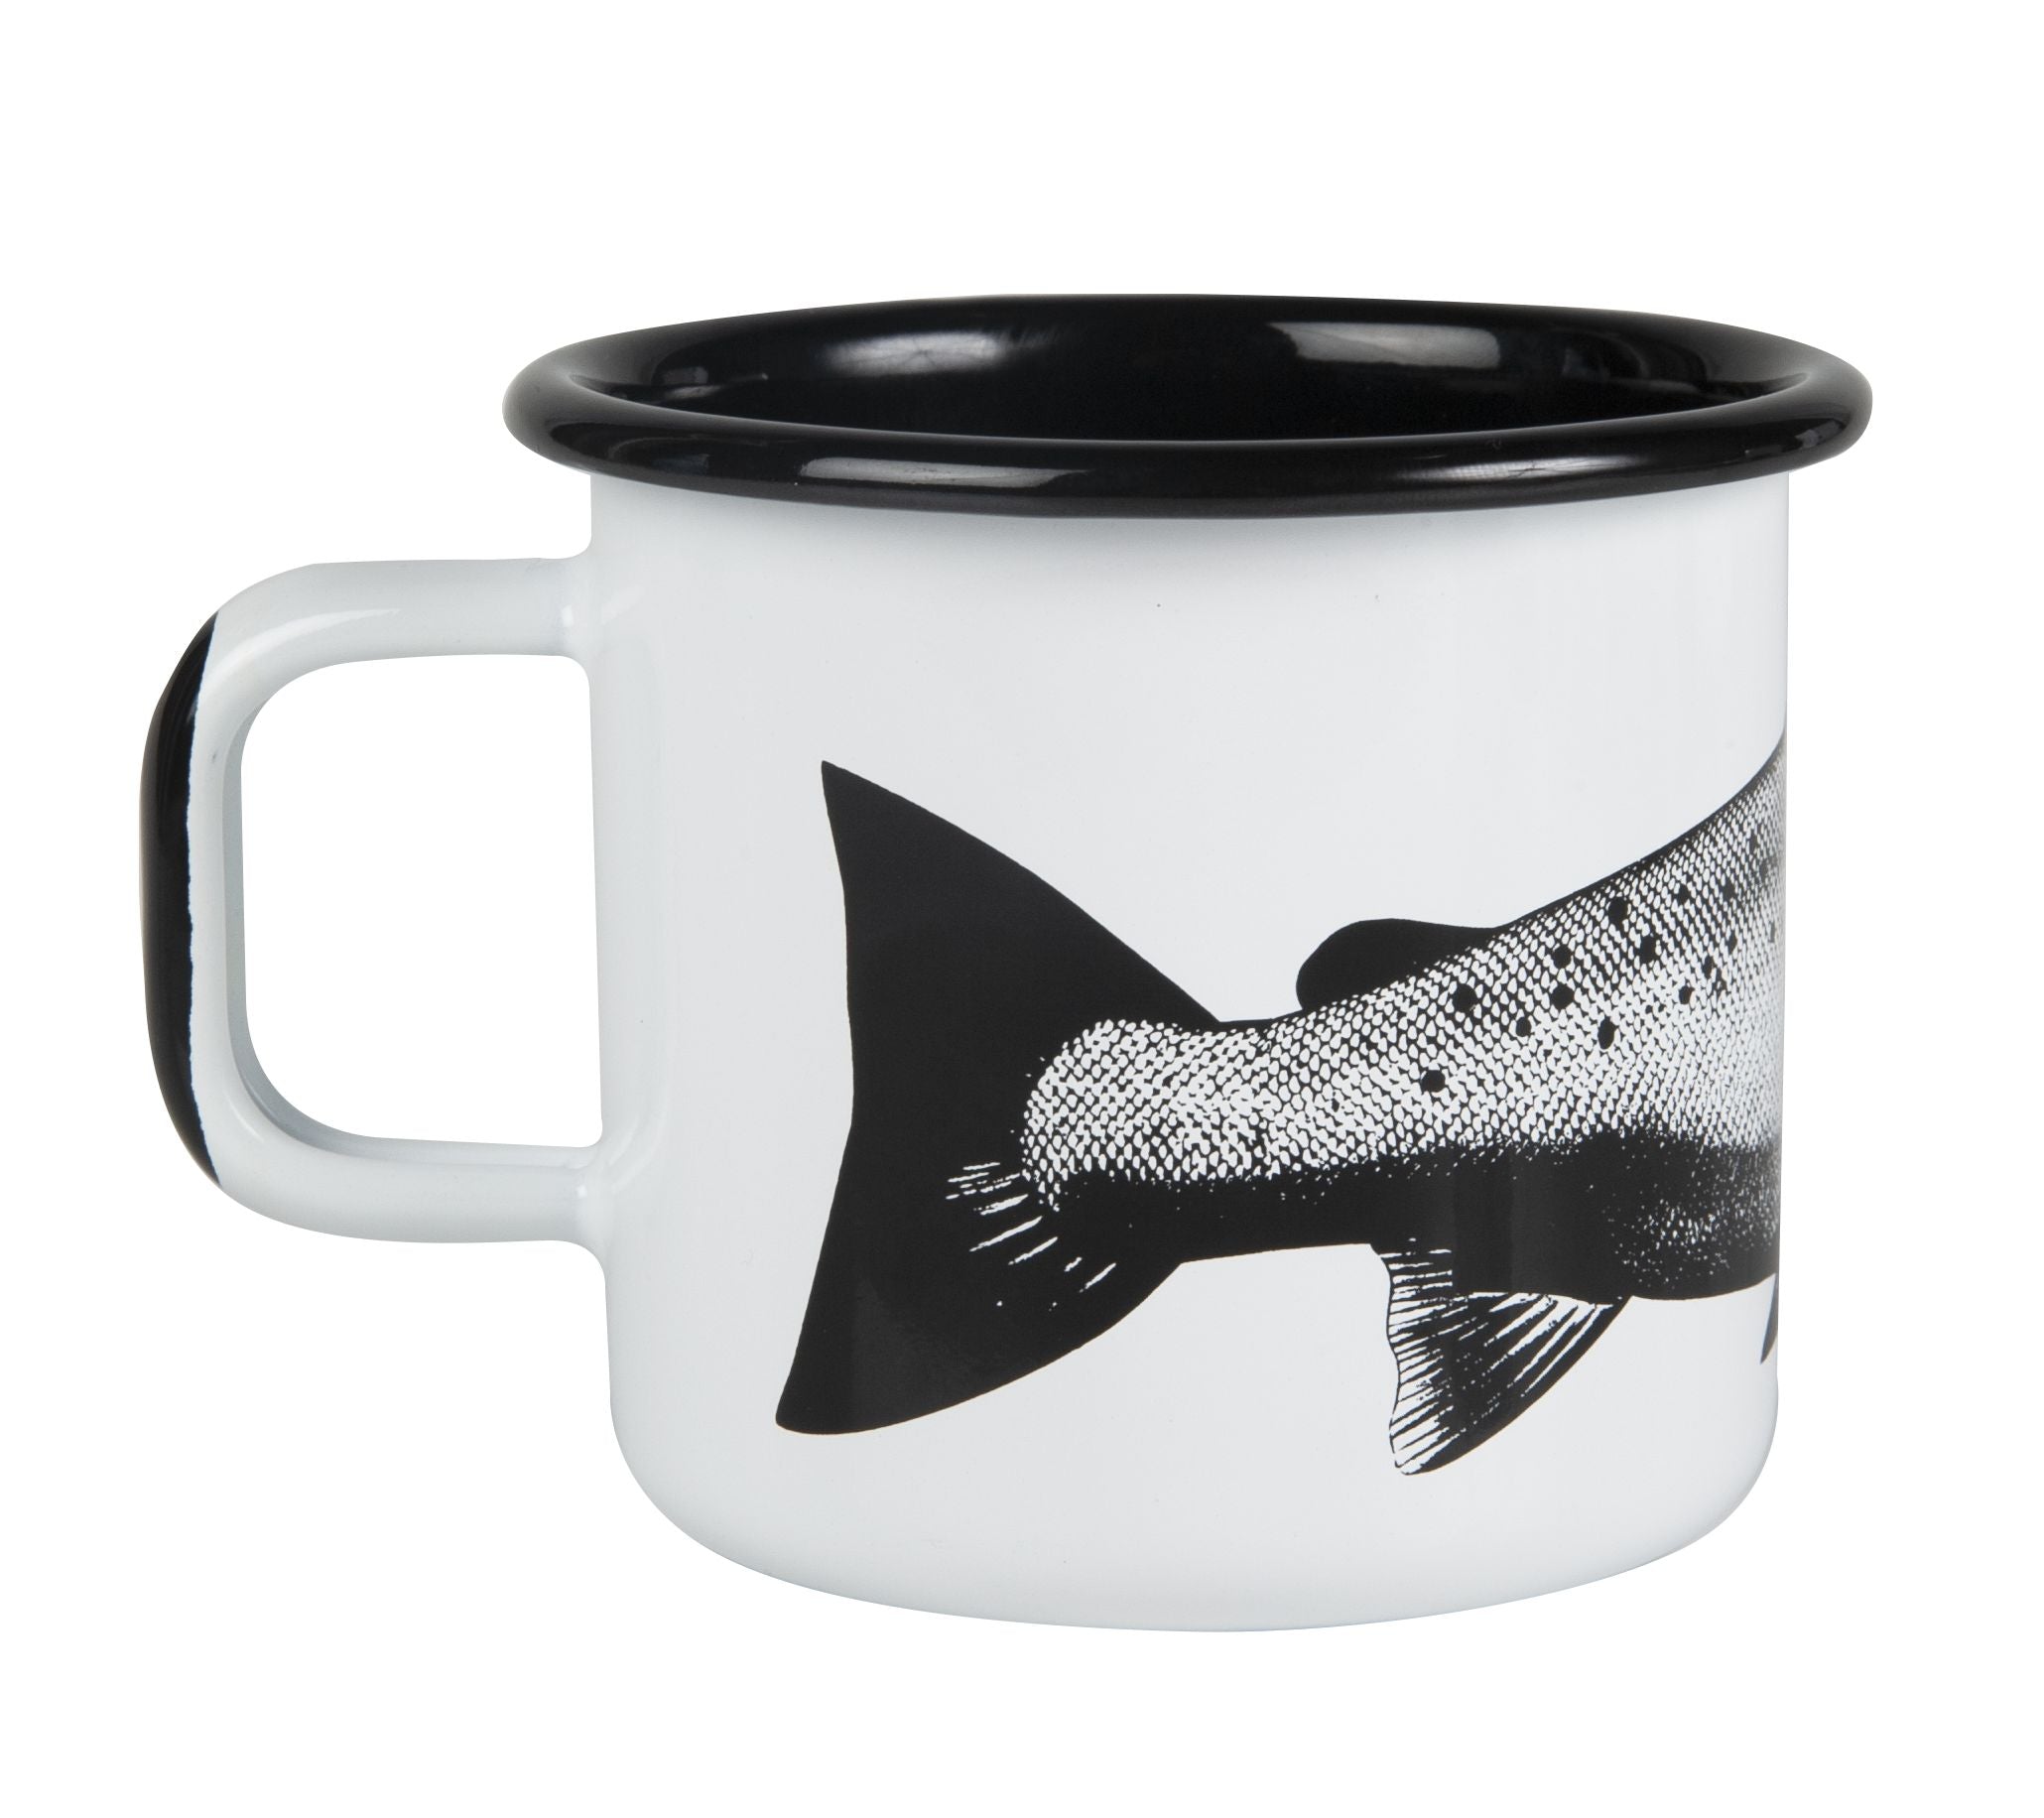 Muurla Nordic Enamel Mug, The Salmon